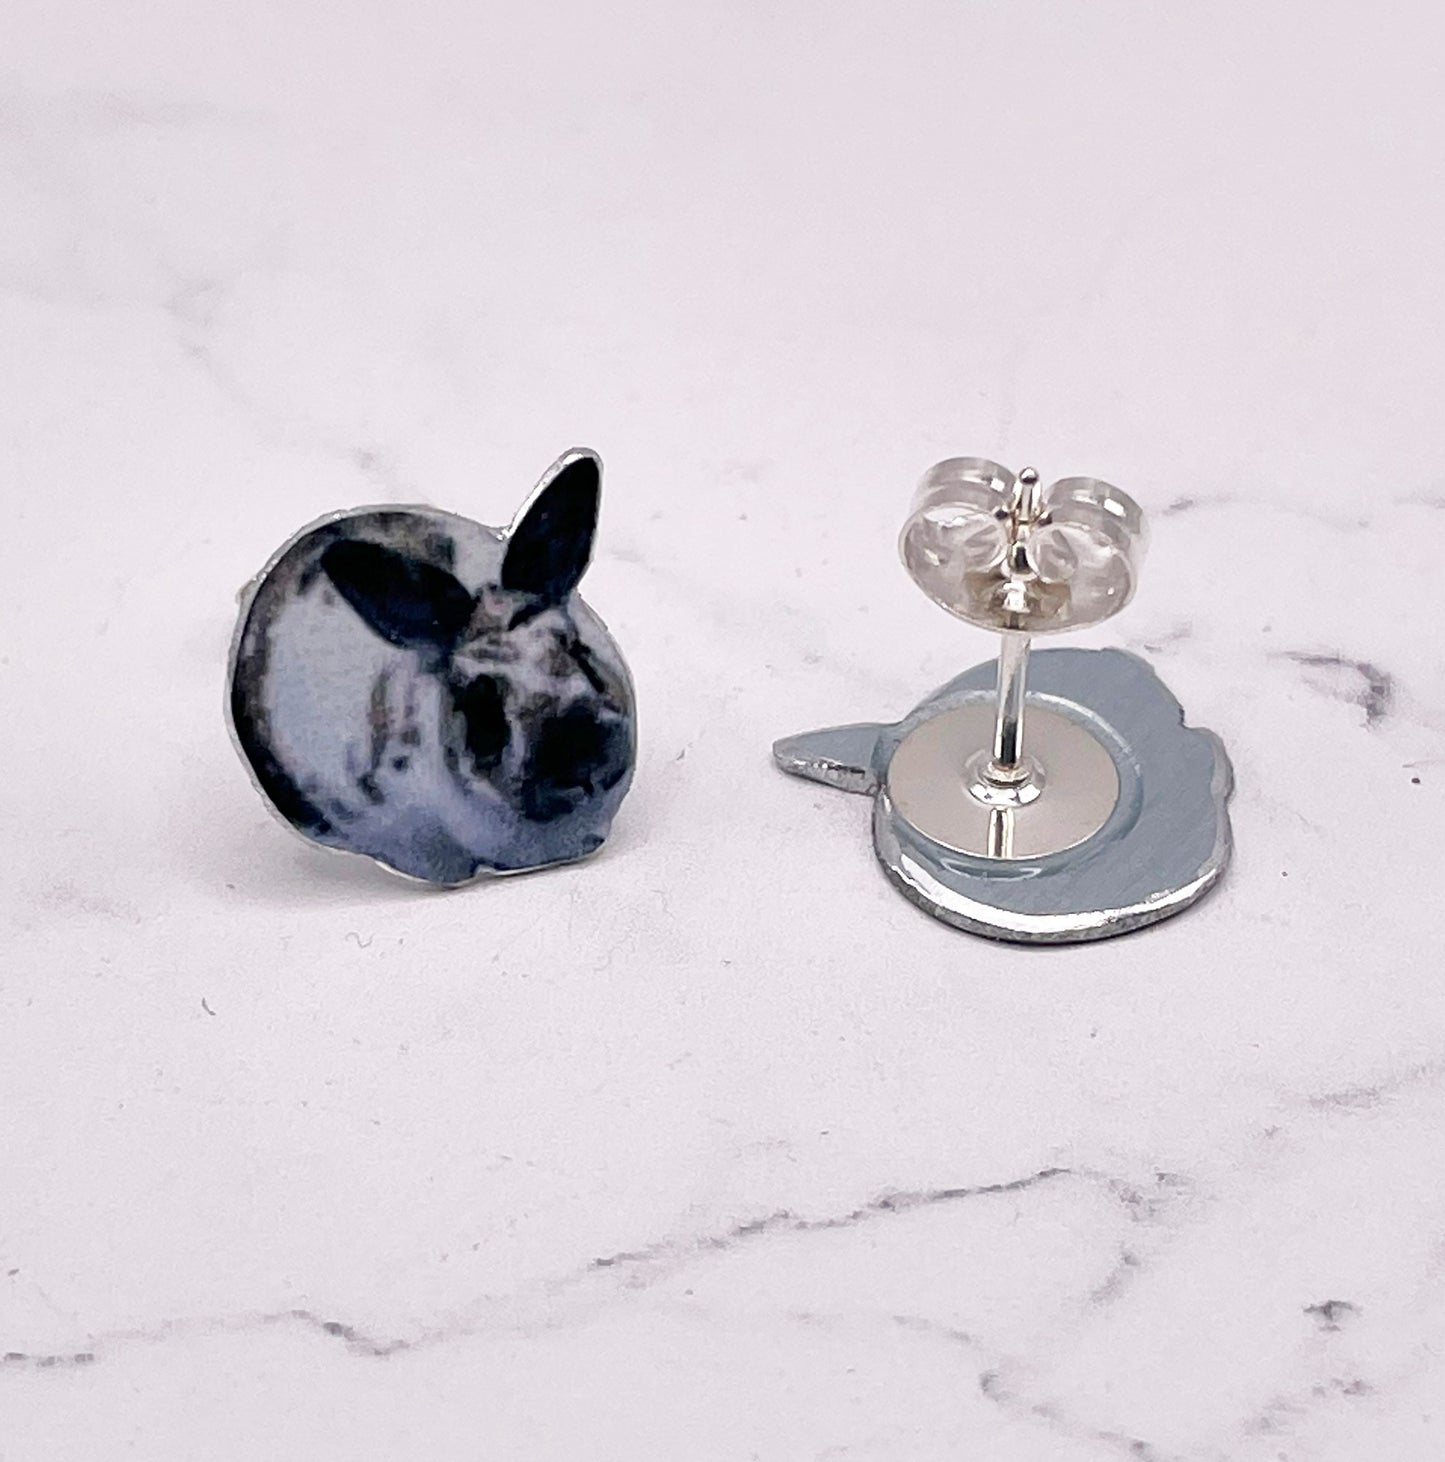 Pet Earrings - Rabbit Studs - Rabbit Earrings - Personalised Pet Earrings - Custom Pet Studs - Pet Studs